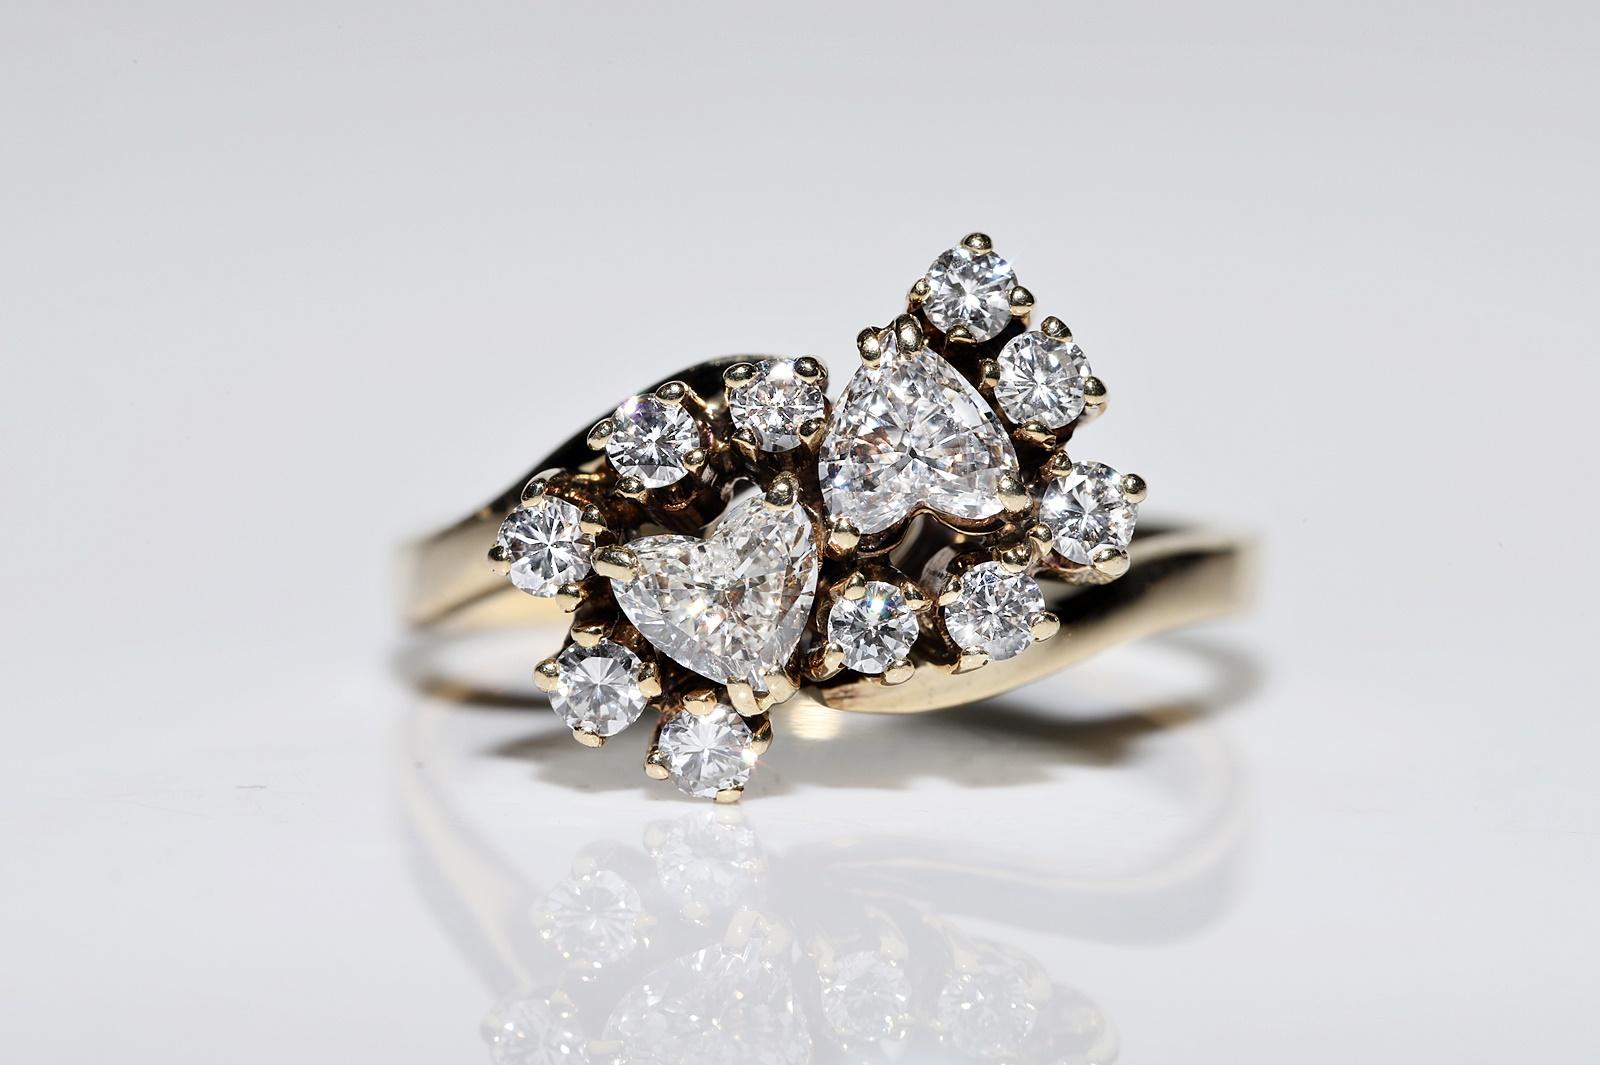 Retro Vintage Original Circa 1970s 14k Gold Natural Diamond Decorated Pretty Ring For Sale